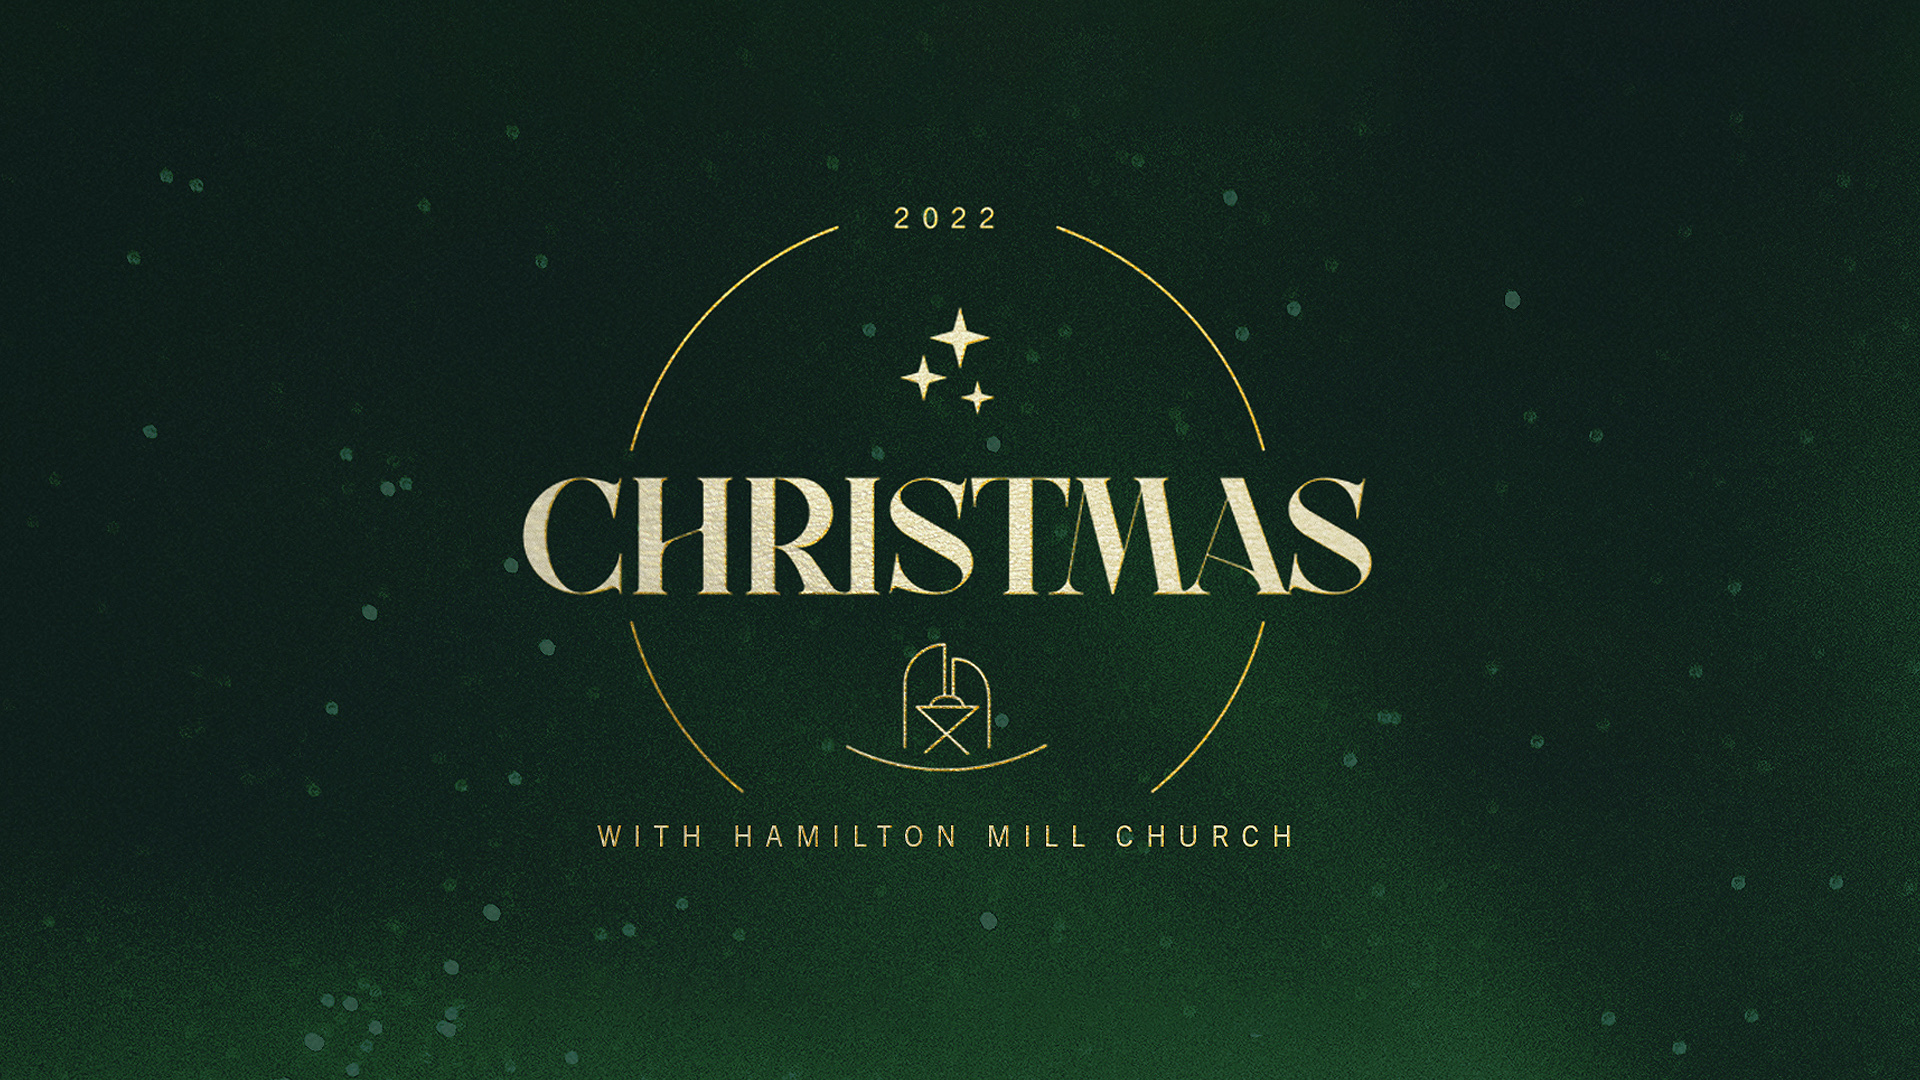 Christmas with Hamilton Mill Church 2022